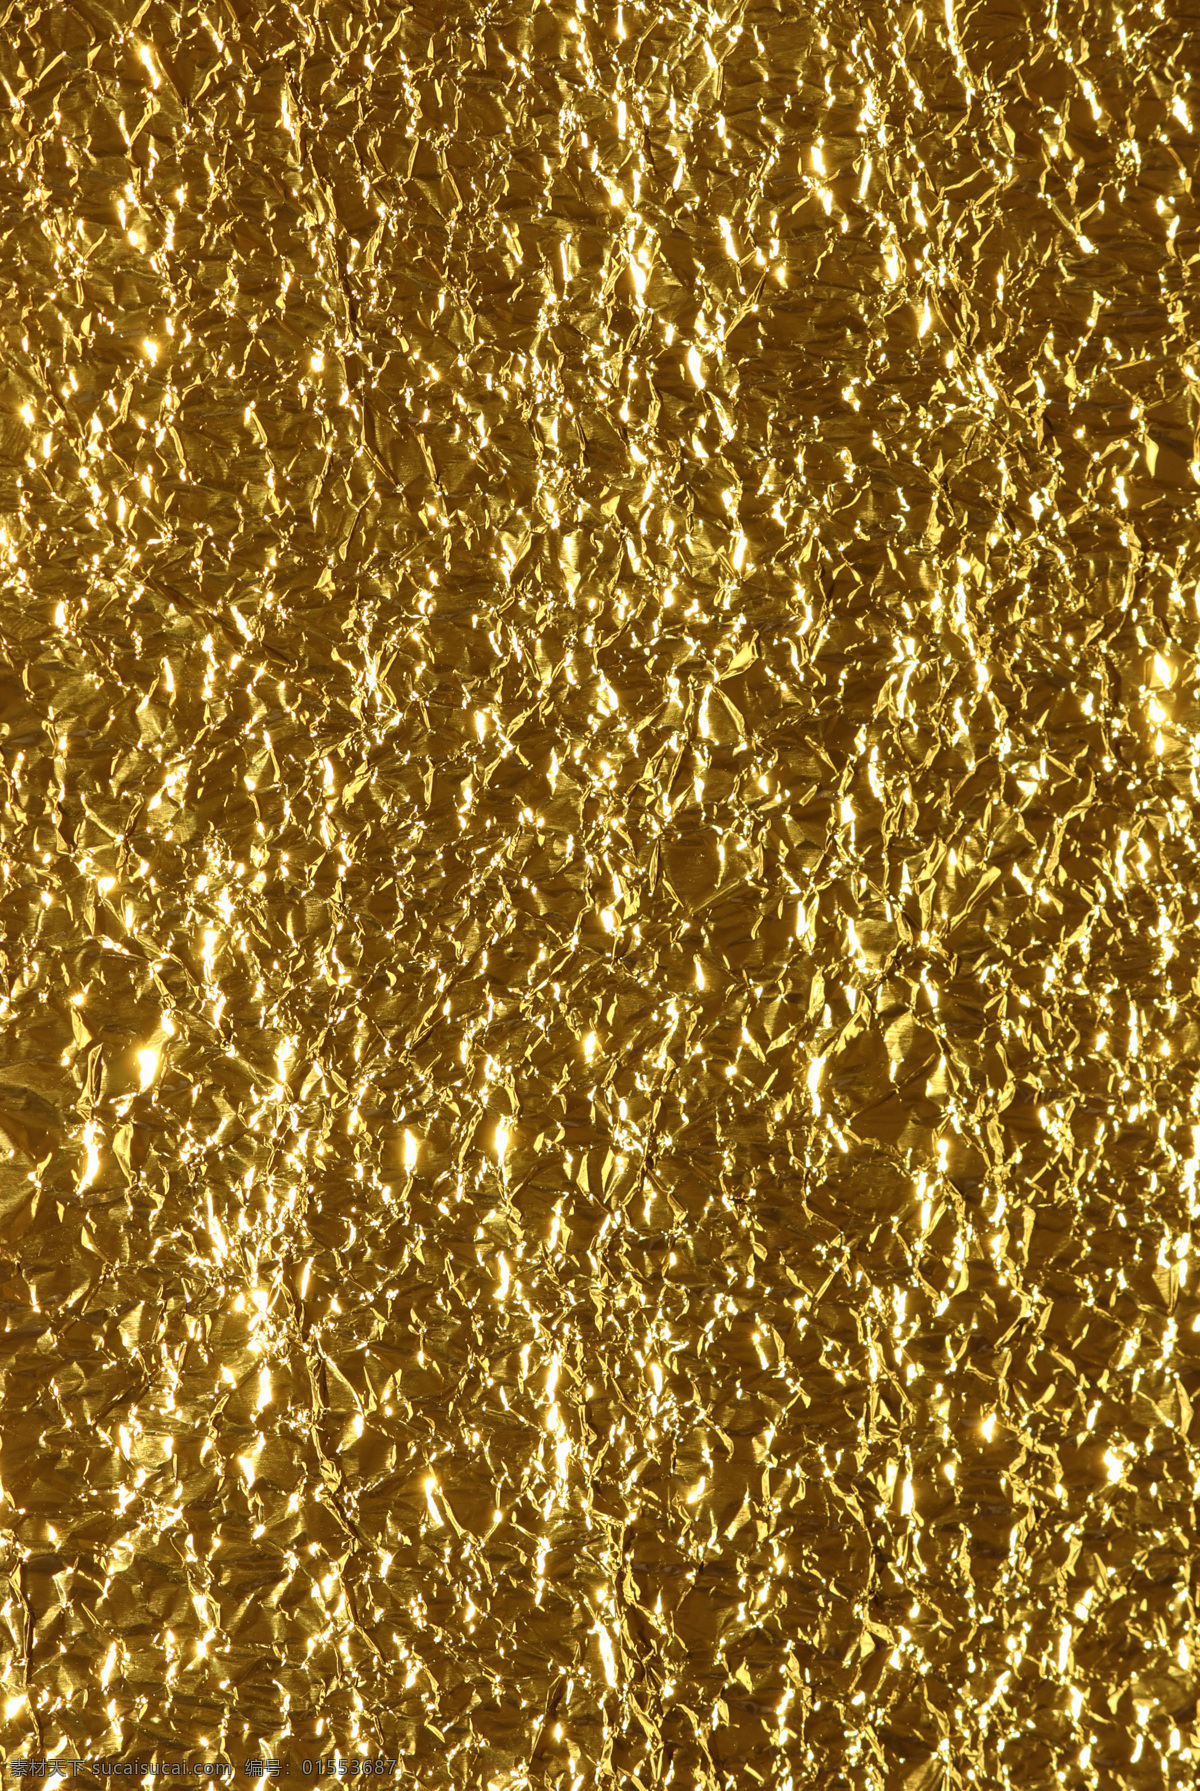 金箔纸 金箔 金箔材质 材质 金色 纹理 金纸 贴纸